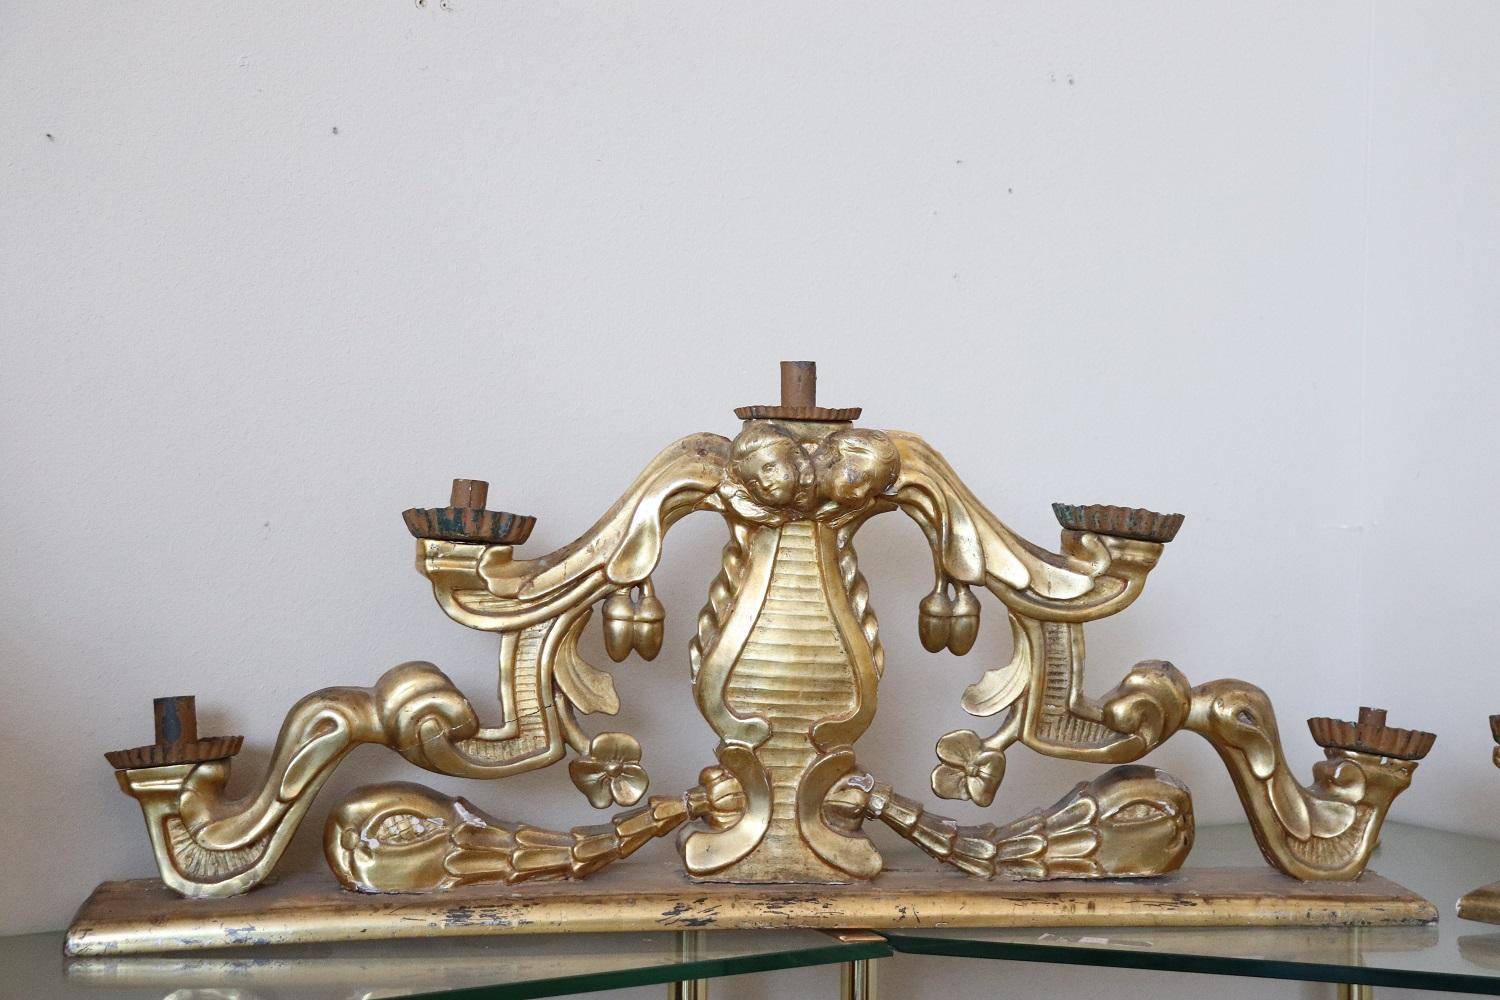 Seltenes großes Paar antiker Tischkandelaber aus geschnitztem und vergoldetem Holz mit fünf Armen für fünf Kerzen. Große künstlerische Qualität des 17. Jahrhunderts in der Mitte der Barockzeit, geschnitztes Holz mit reichem Dekor von Locken und